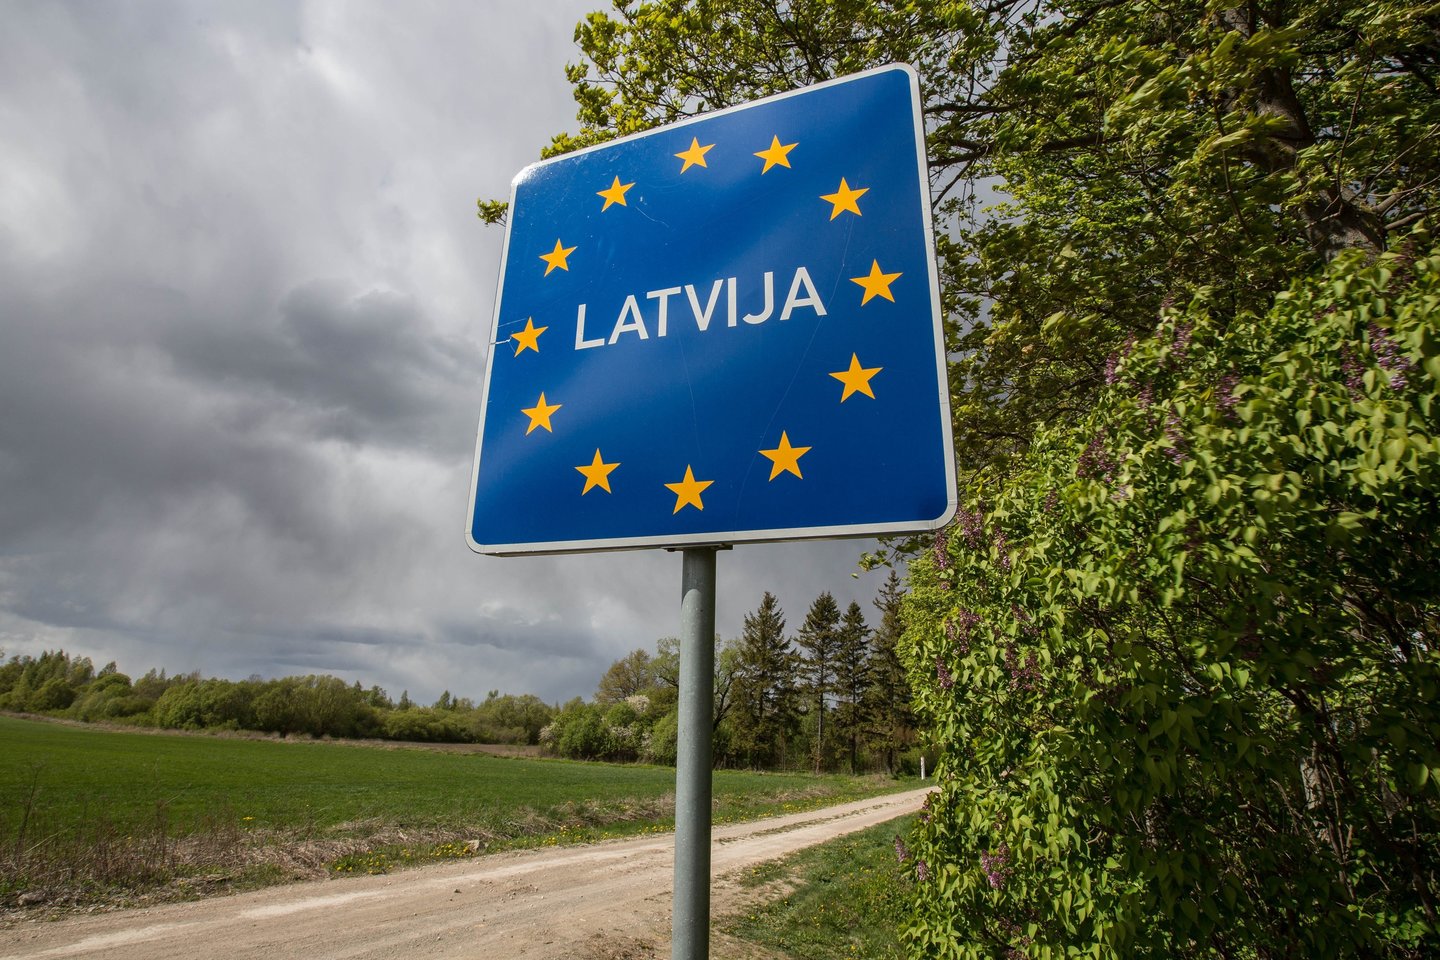 ​Iš Estijos į Latviją atvykstantys žmonės nuo šeštadienio turės izoliuotis 14 dienų, siekiant apriboti koronaviruso plitimą, penktadienį pranešė estų užsienio reikalų ministerija.<br>V.Balkūno nuotr.